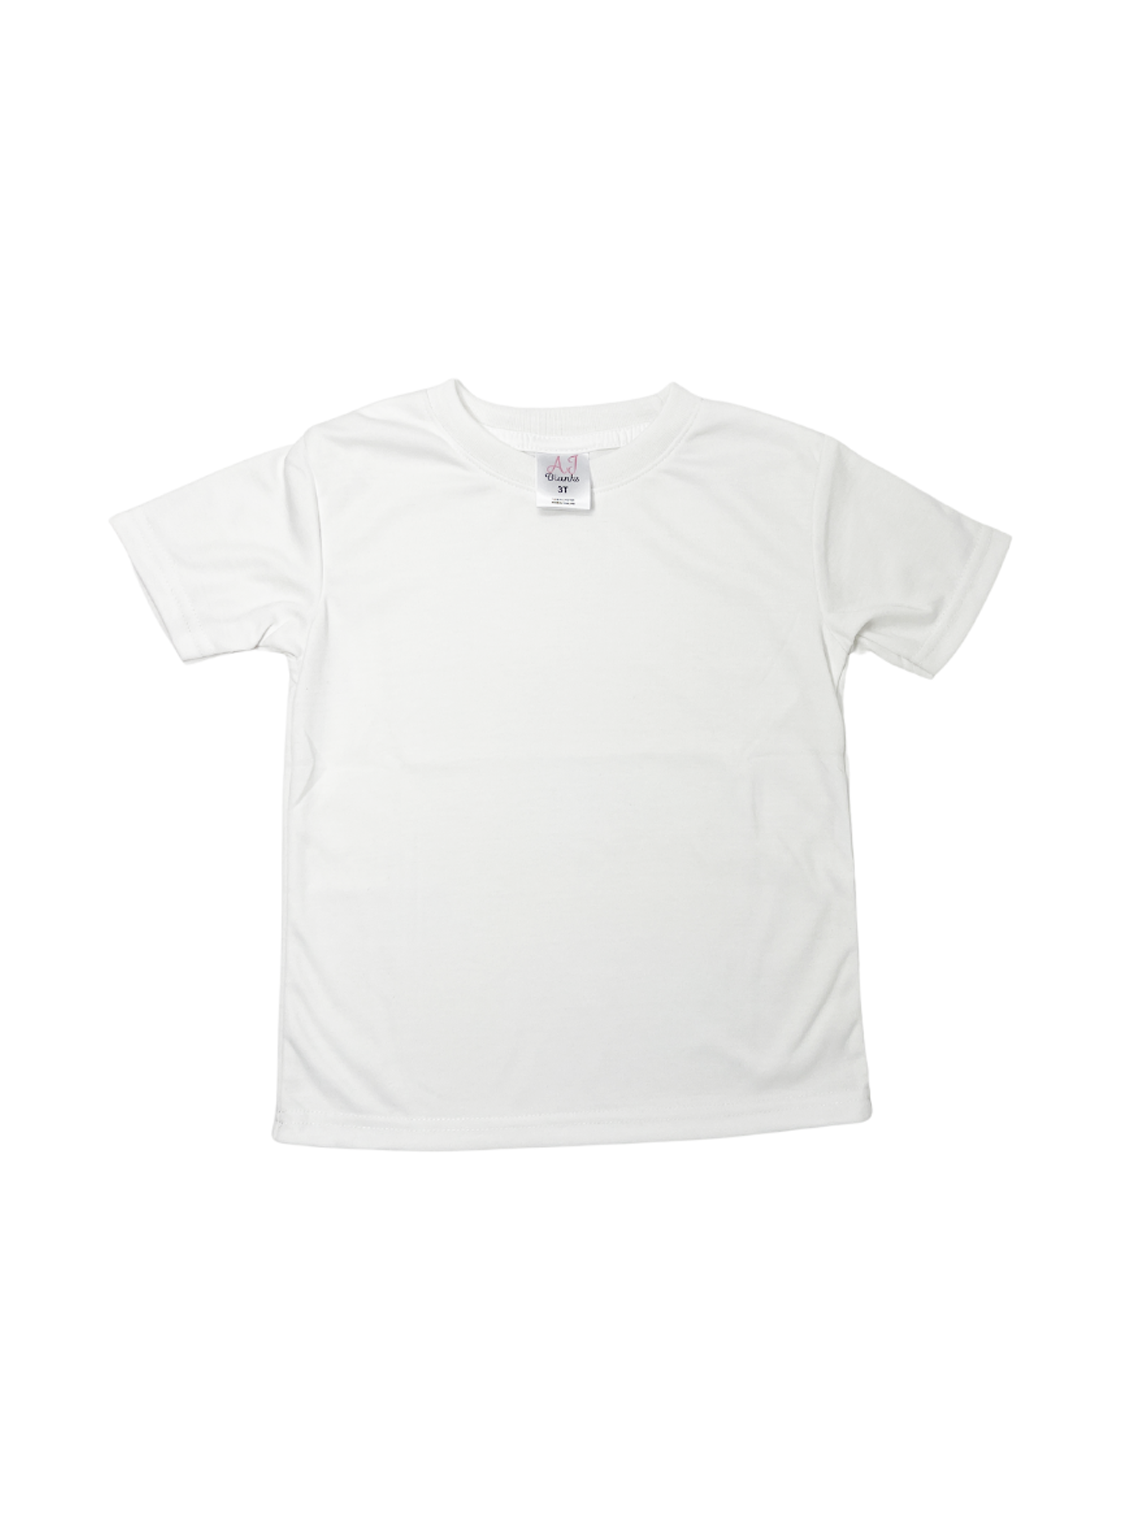 Unisex SUBLIMATION Short Sleeve Shirt